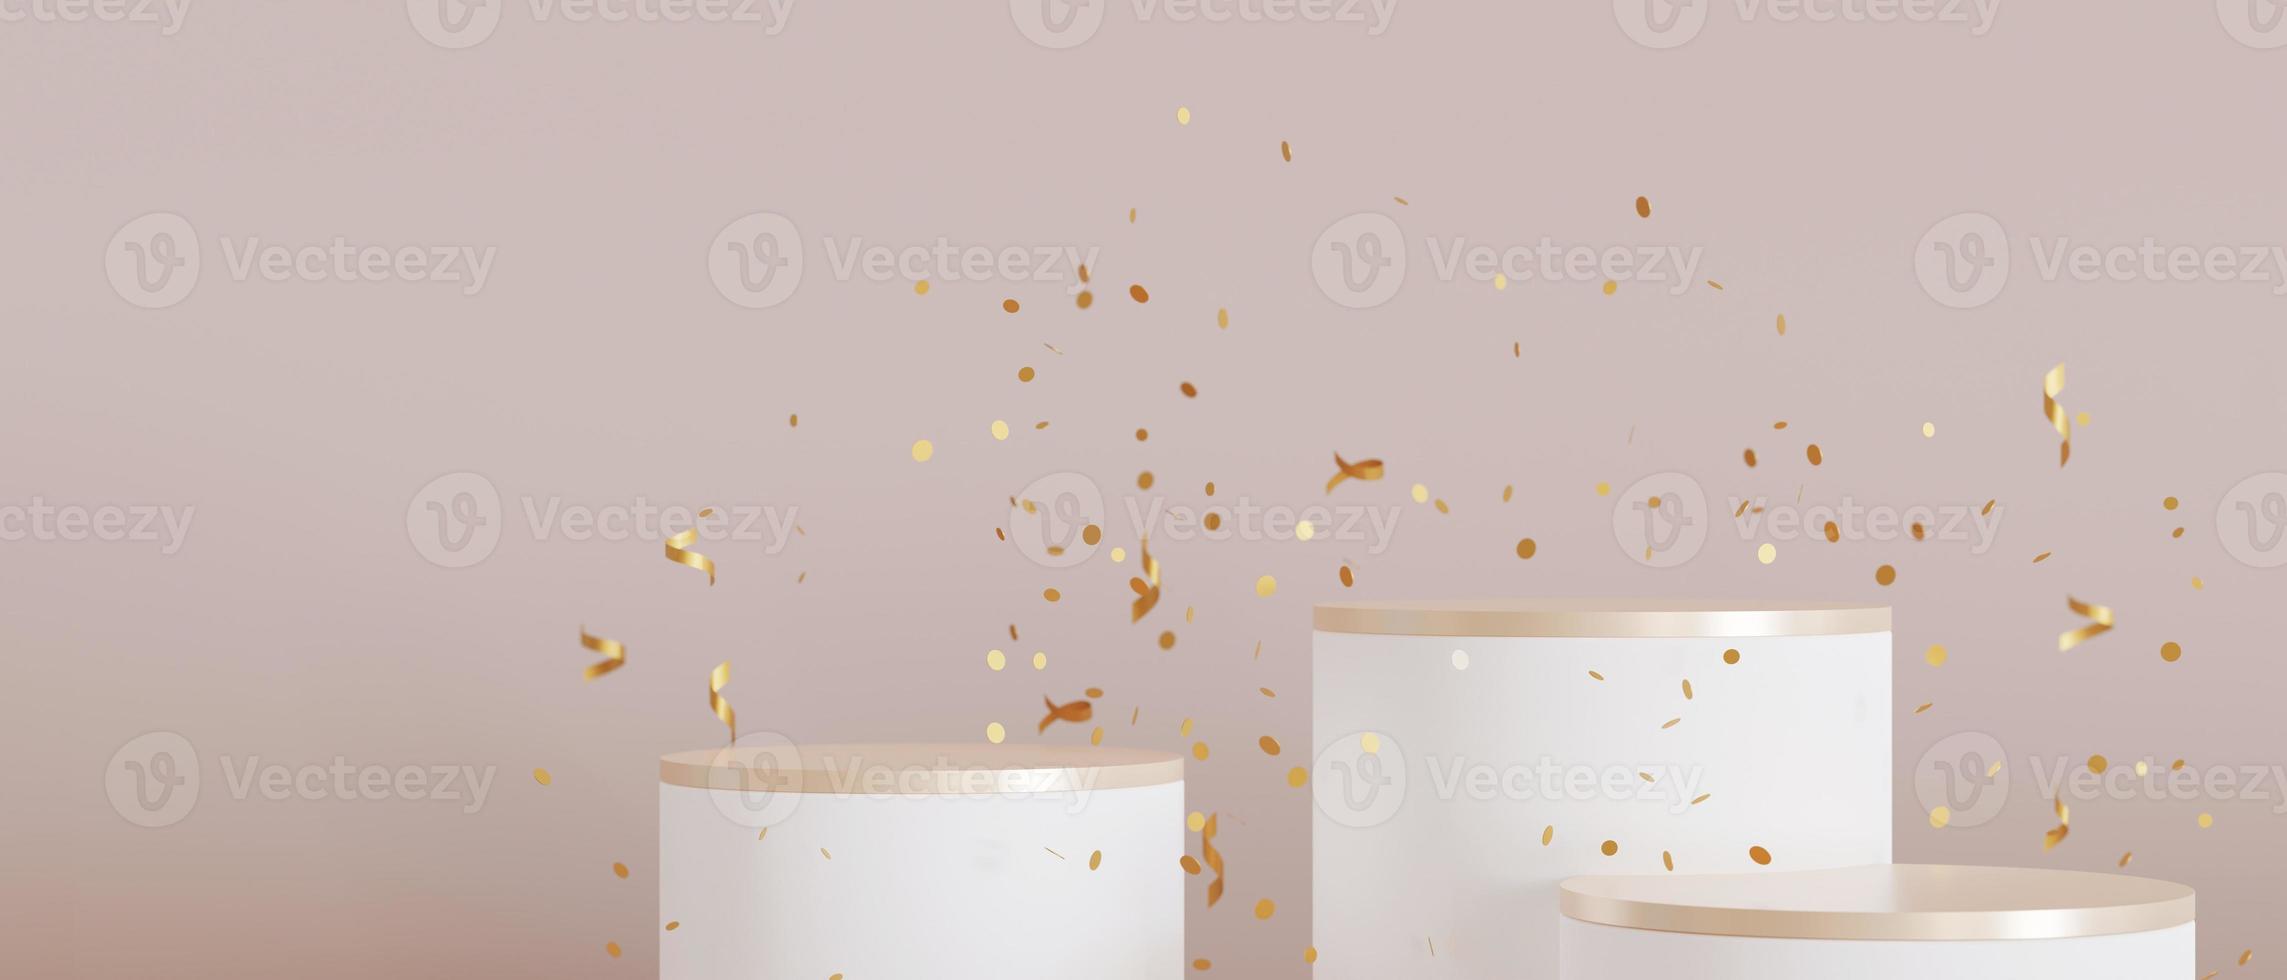 ensemble de podiums blancs et dorés avec chute de confettis sur fond beige. podiums élégants pour produit, présentation cosmétique. maquette. piédestal, plate-forme pour produits de beauté. scène vide. rendu 3D. photo